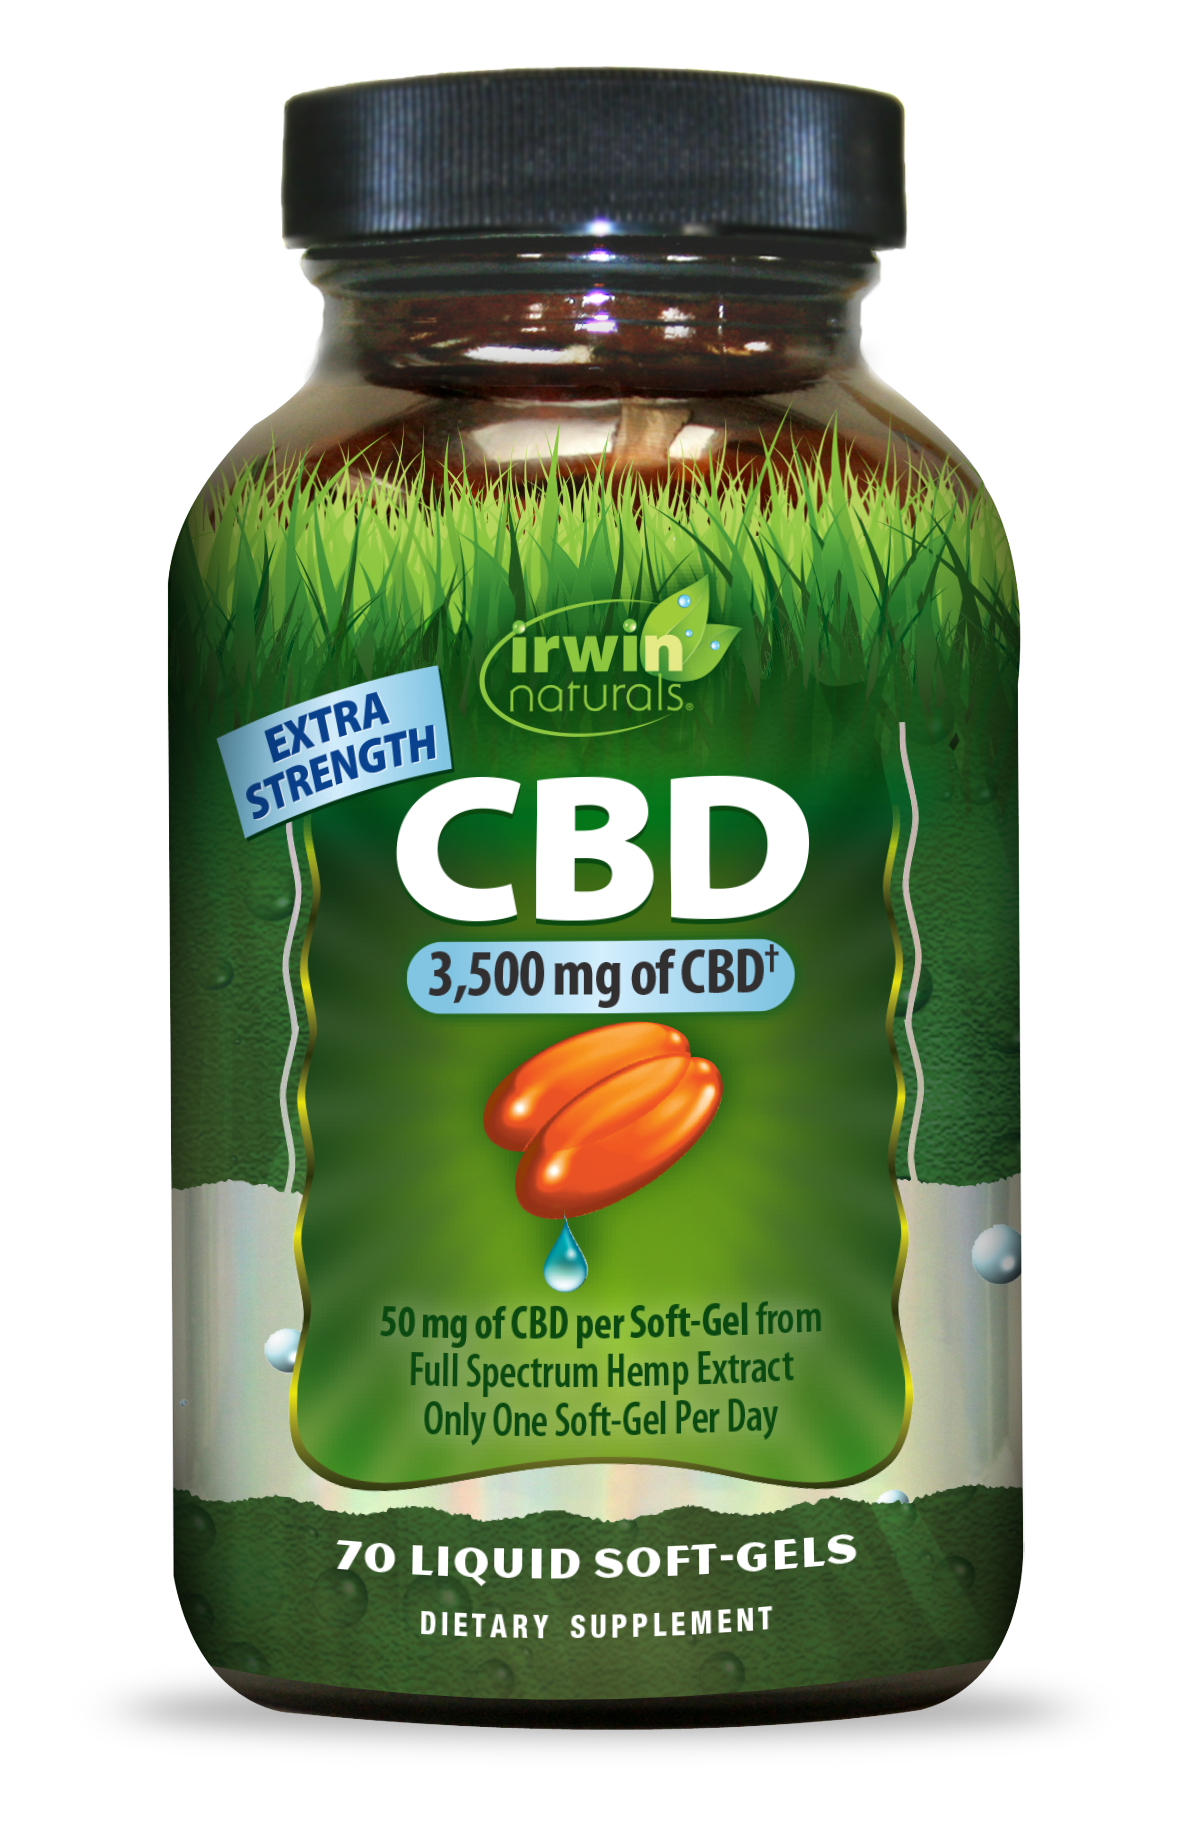 Extra-Strength CBD Soft Gels: 50 mg